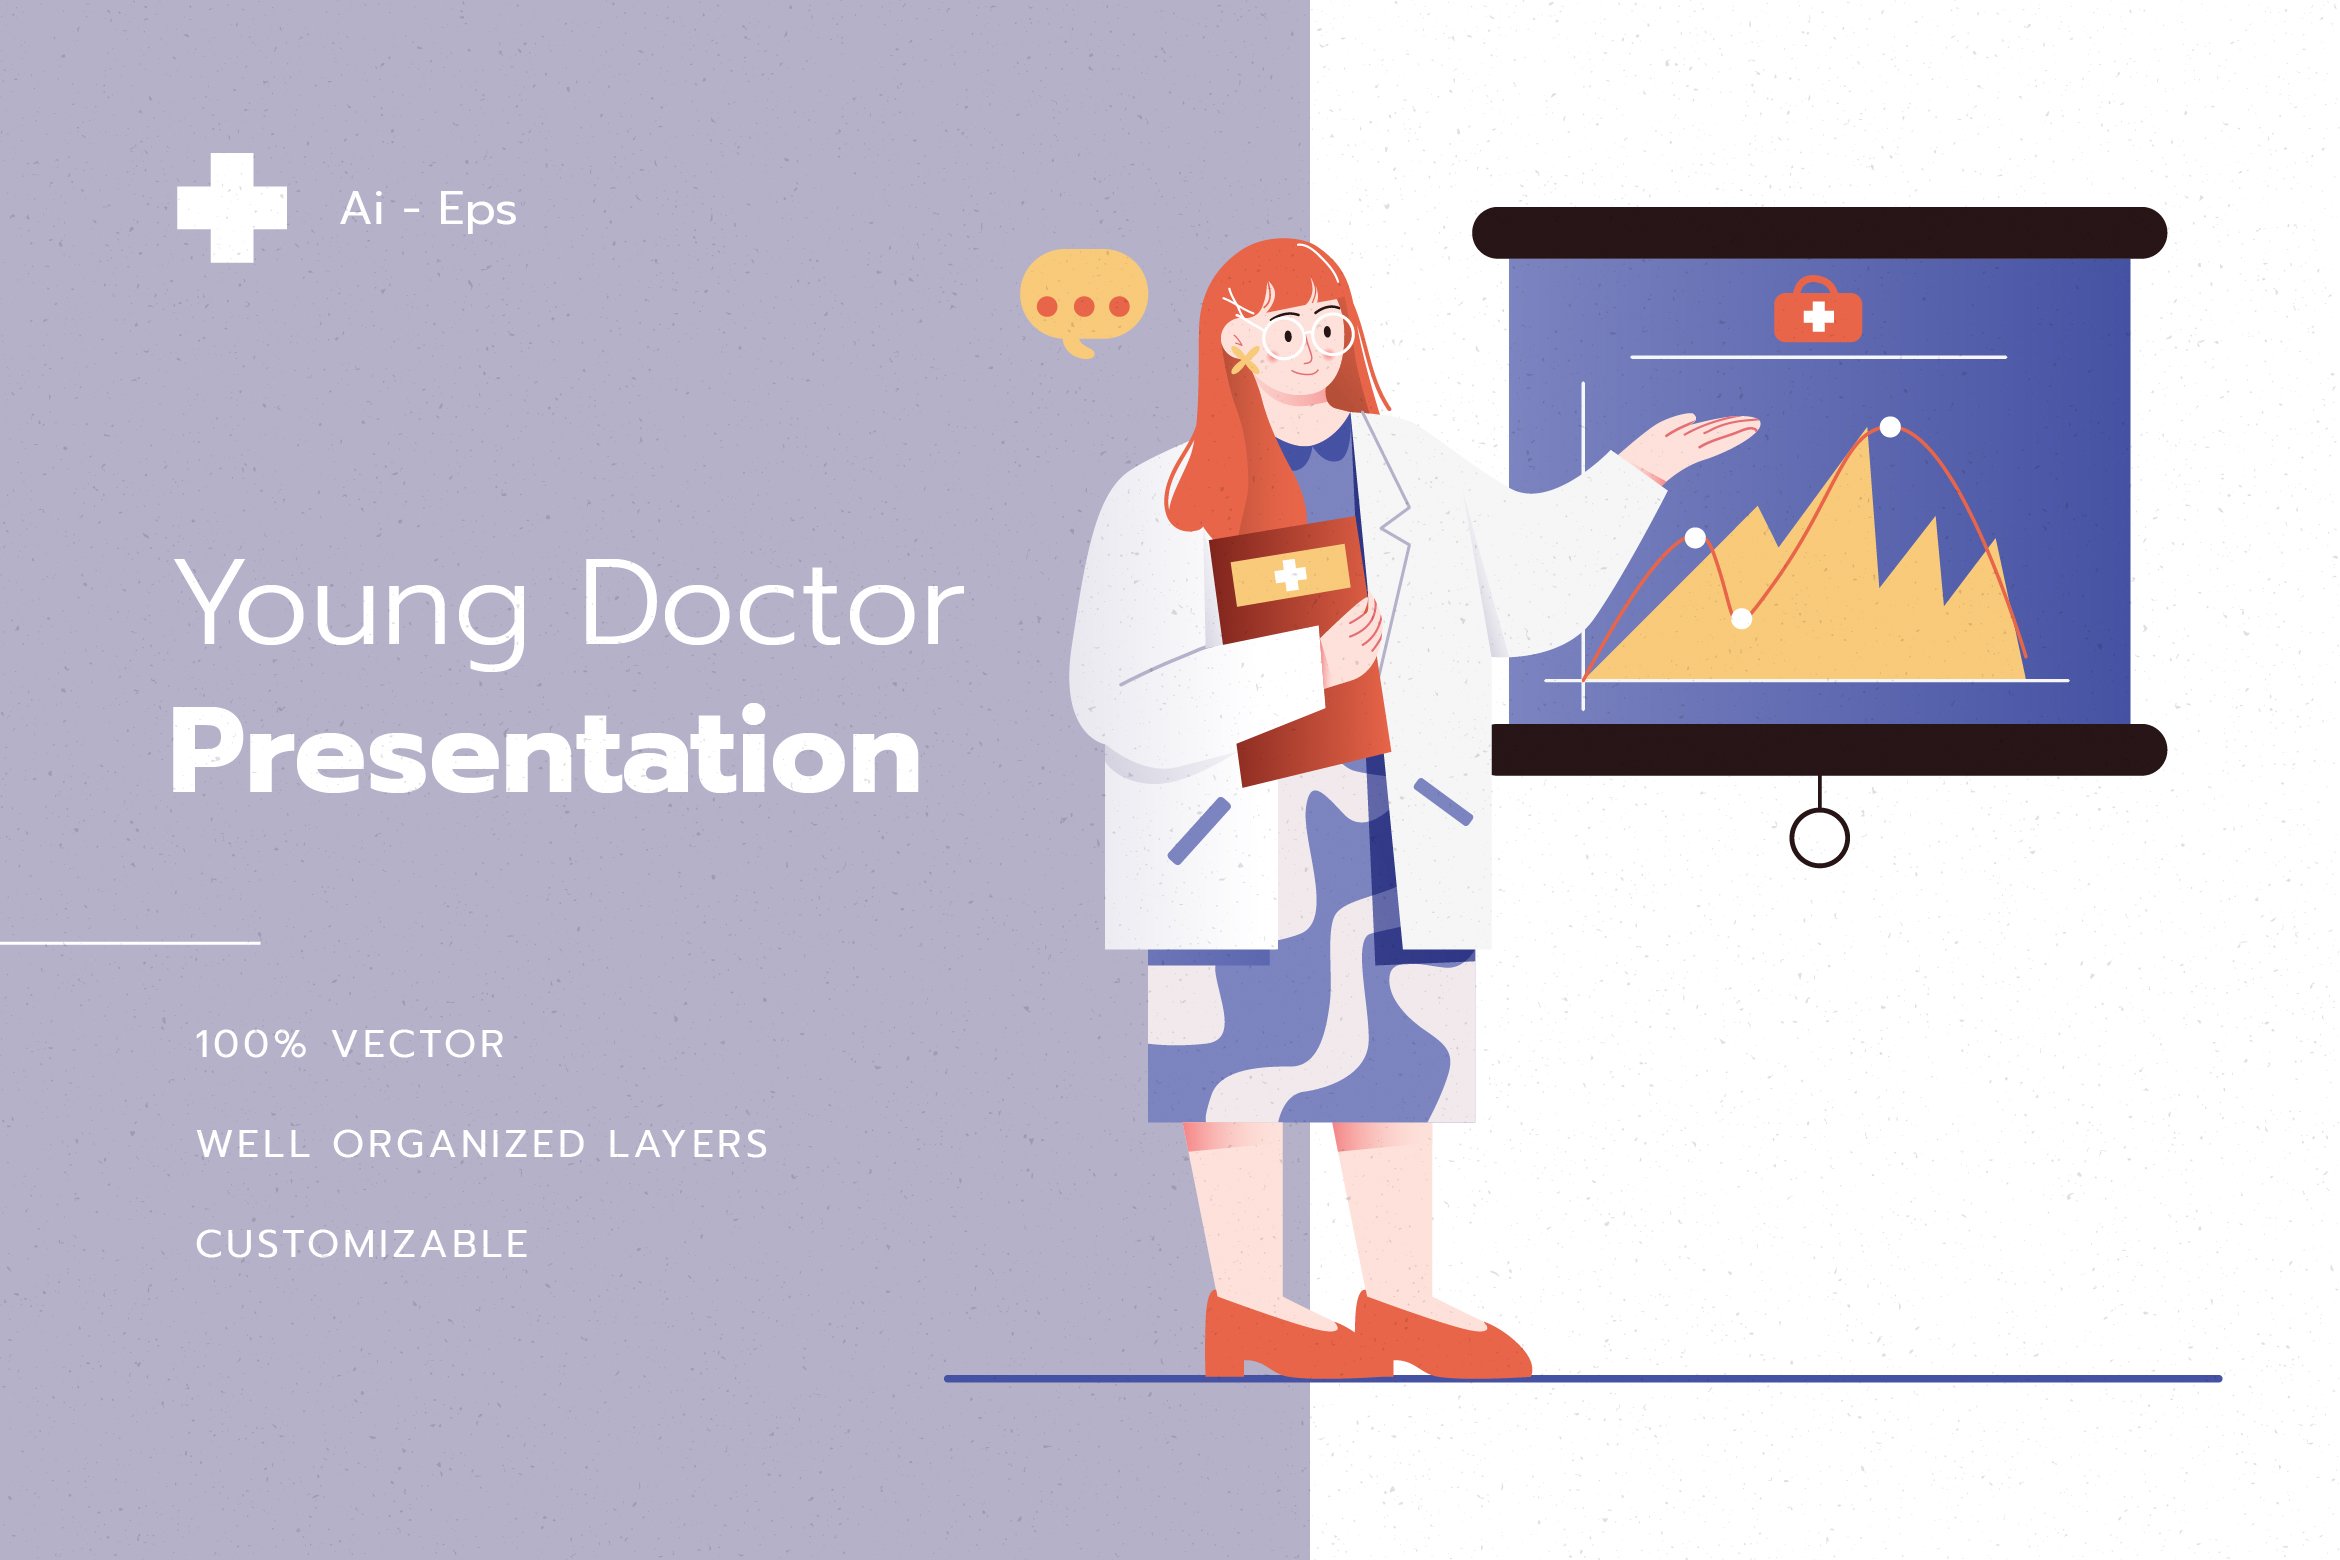 Doctor Presentation Illustration cover image.